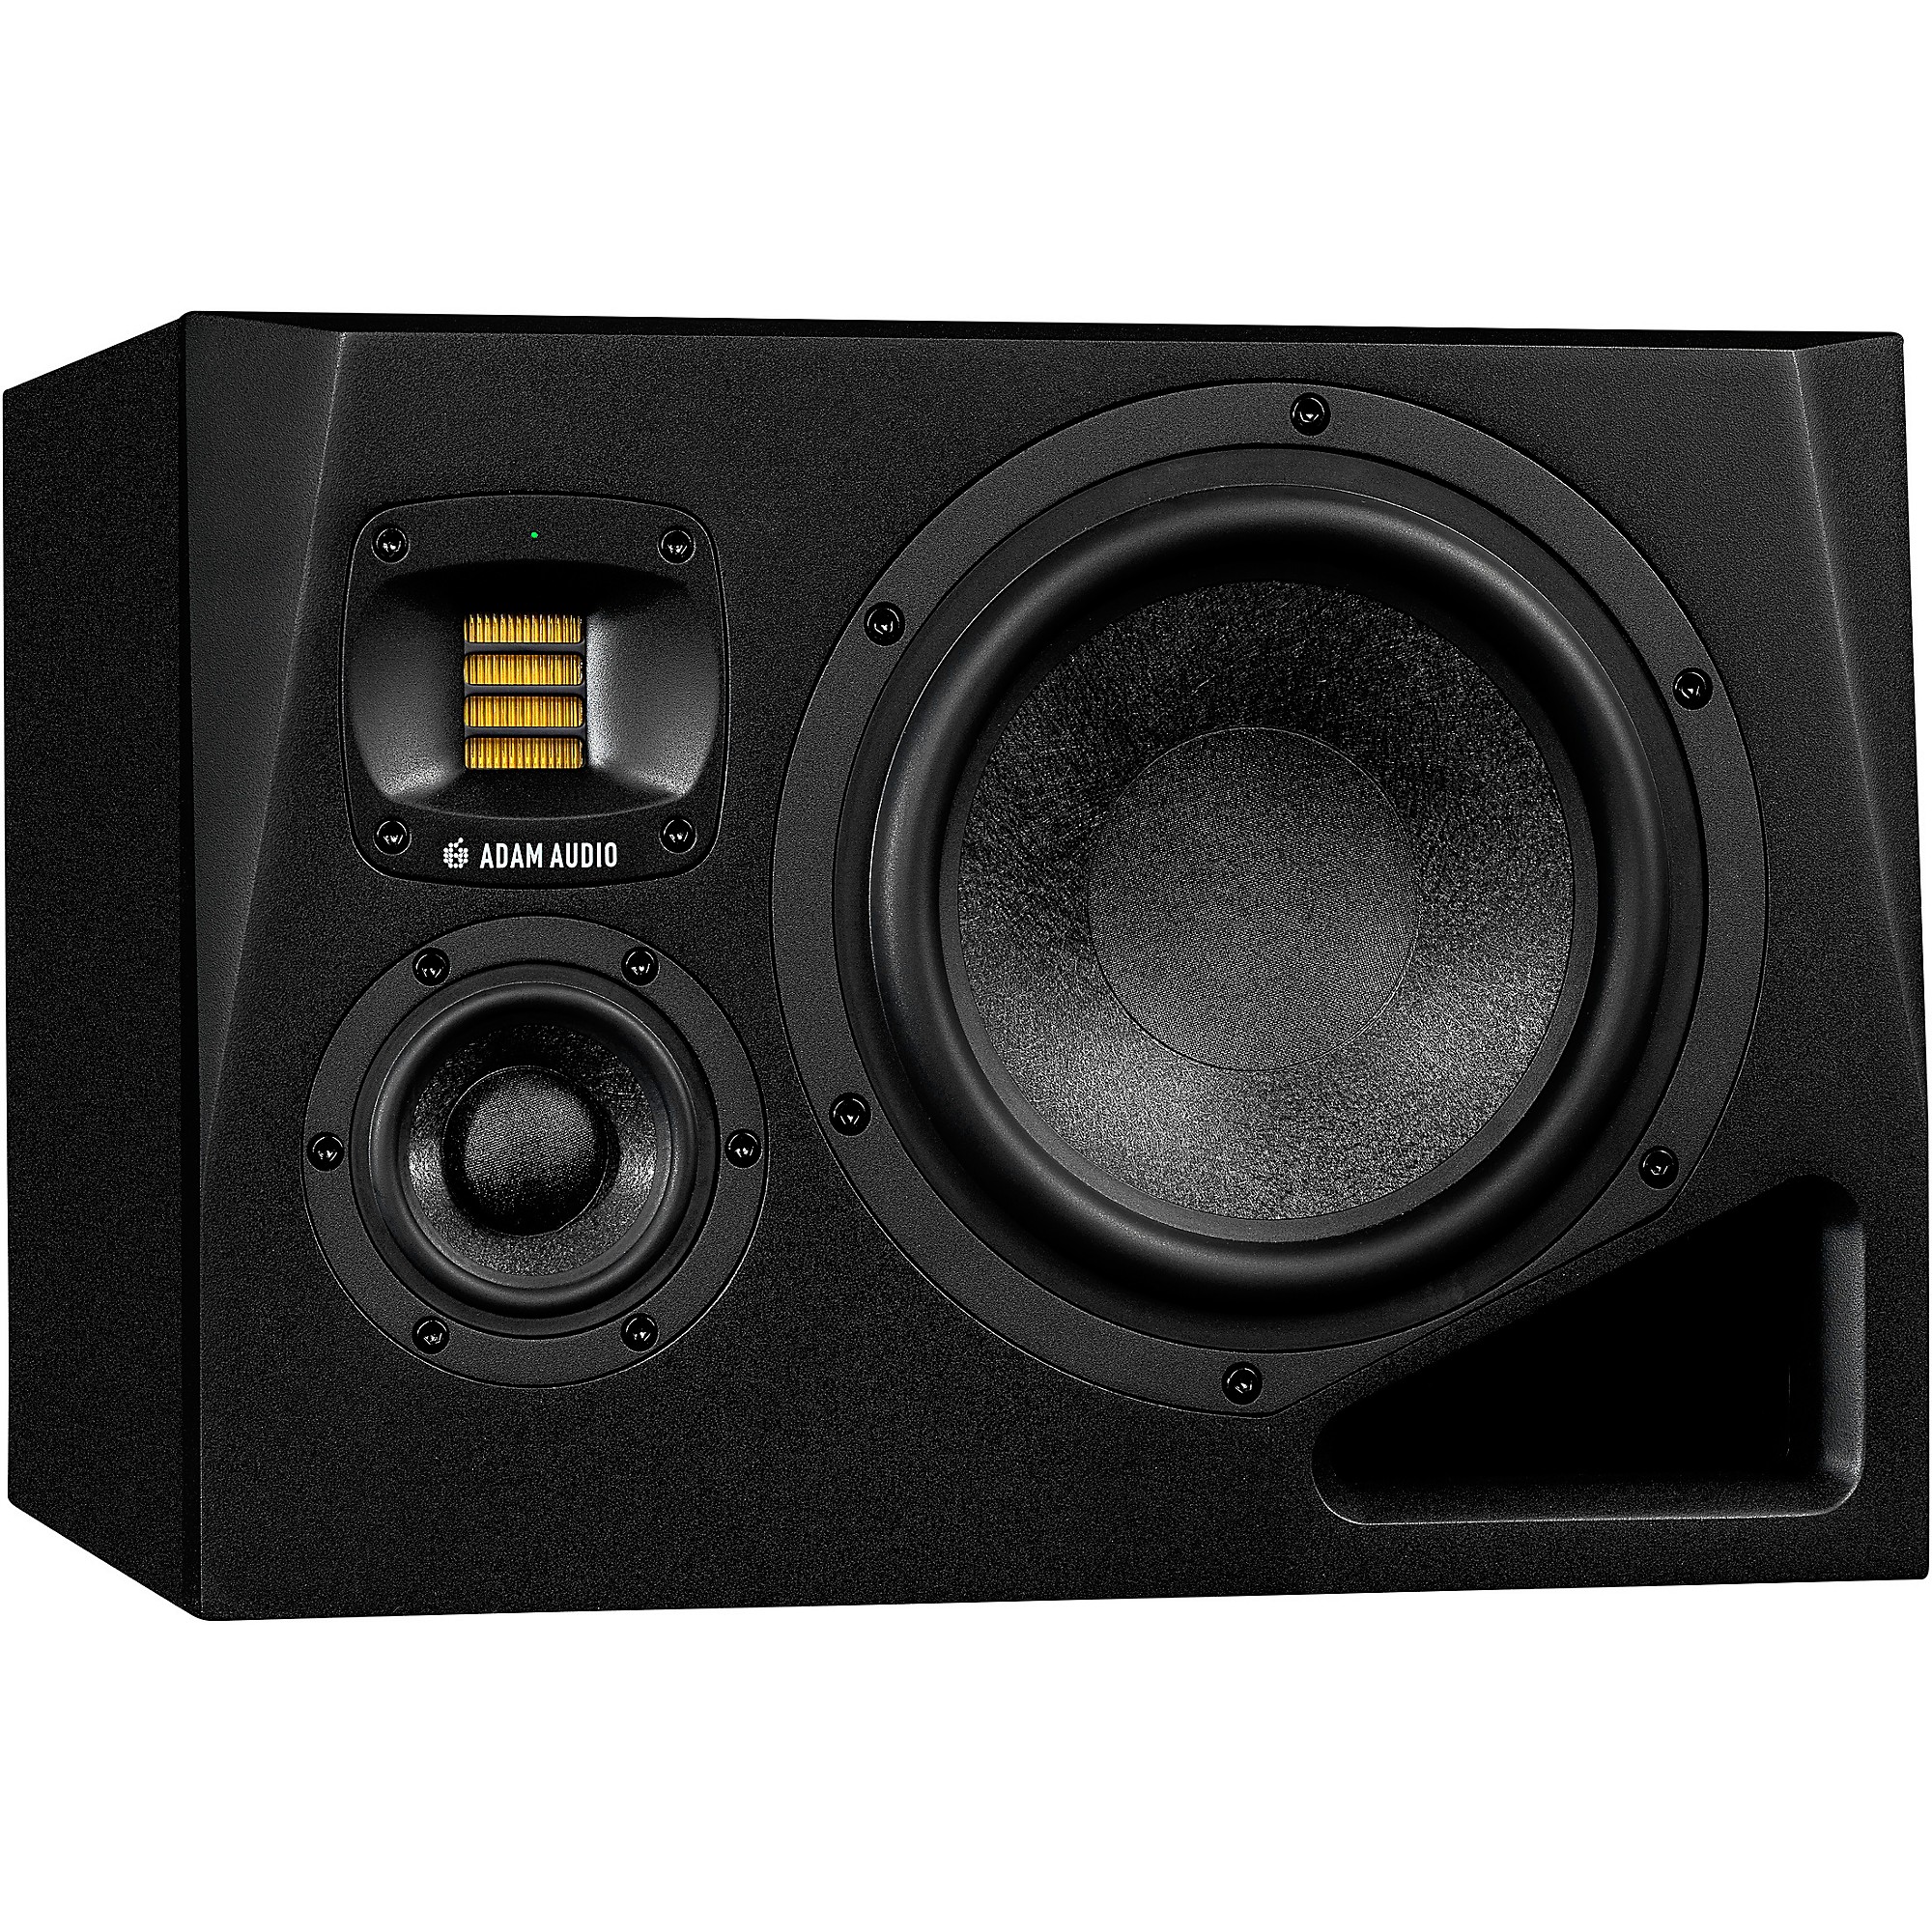 Adam Audio A4V Studio Monitors Review - Custom sound for DJs & Producers 